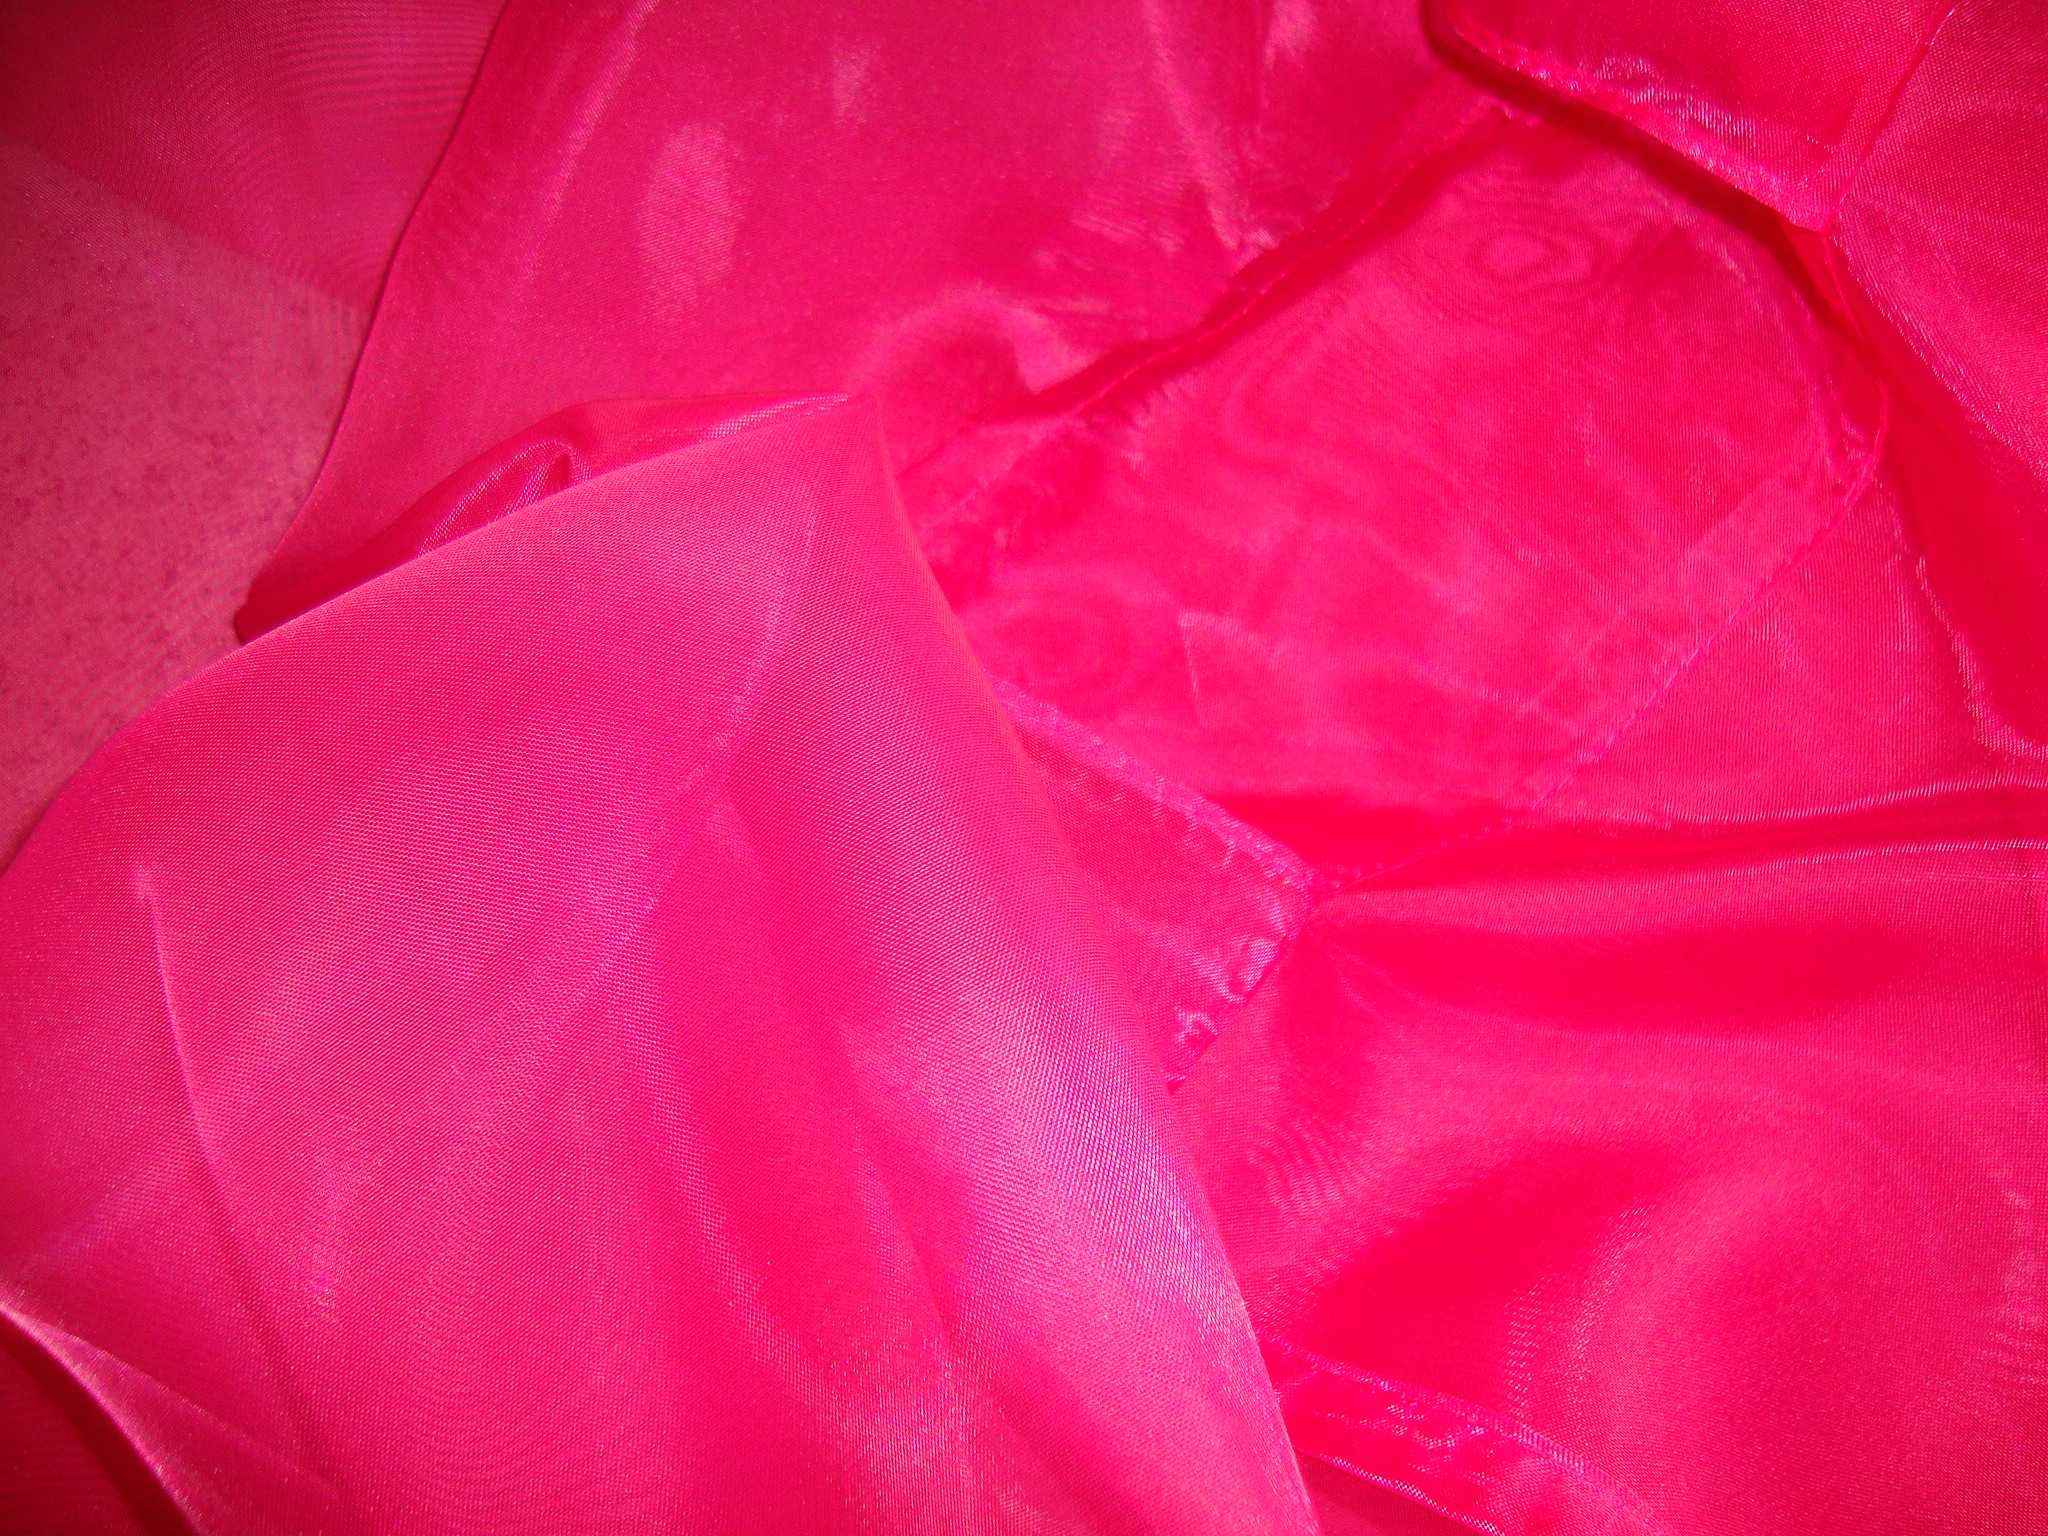 Cortinados rosa fúshia transparentes